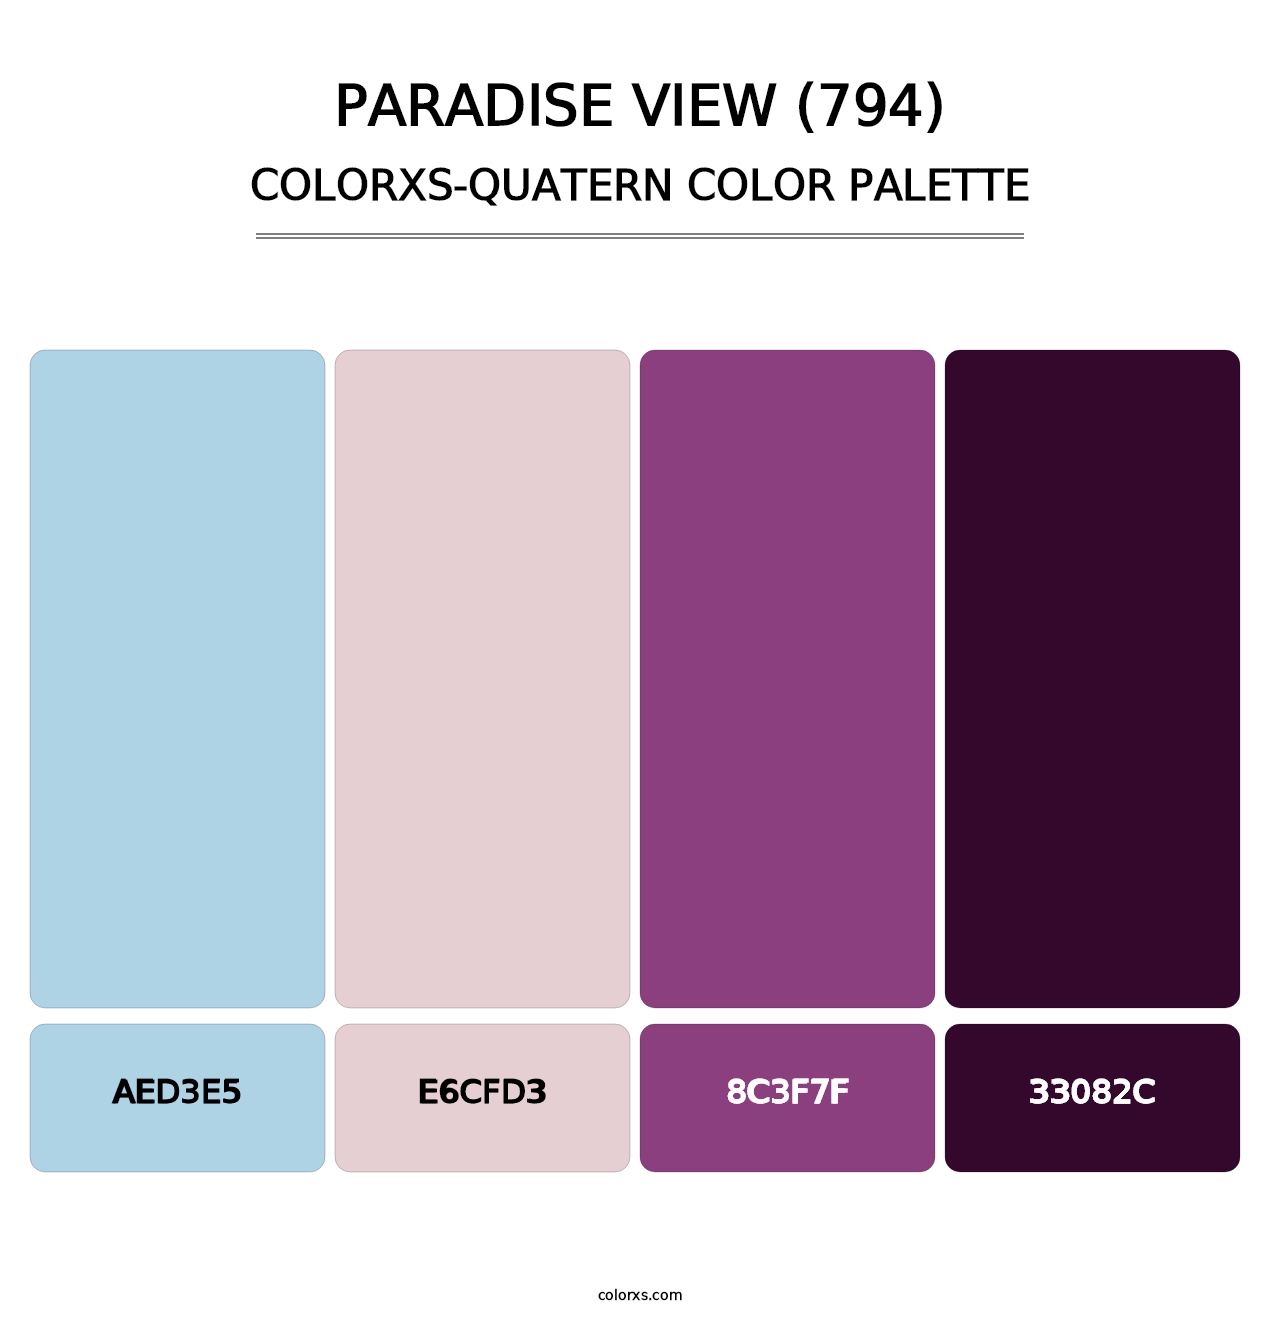 Paradise View (794) - Colorxs Quatern Palette